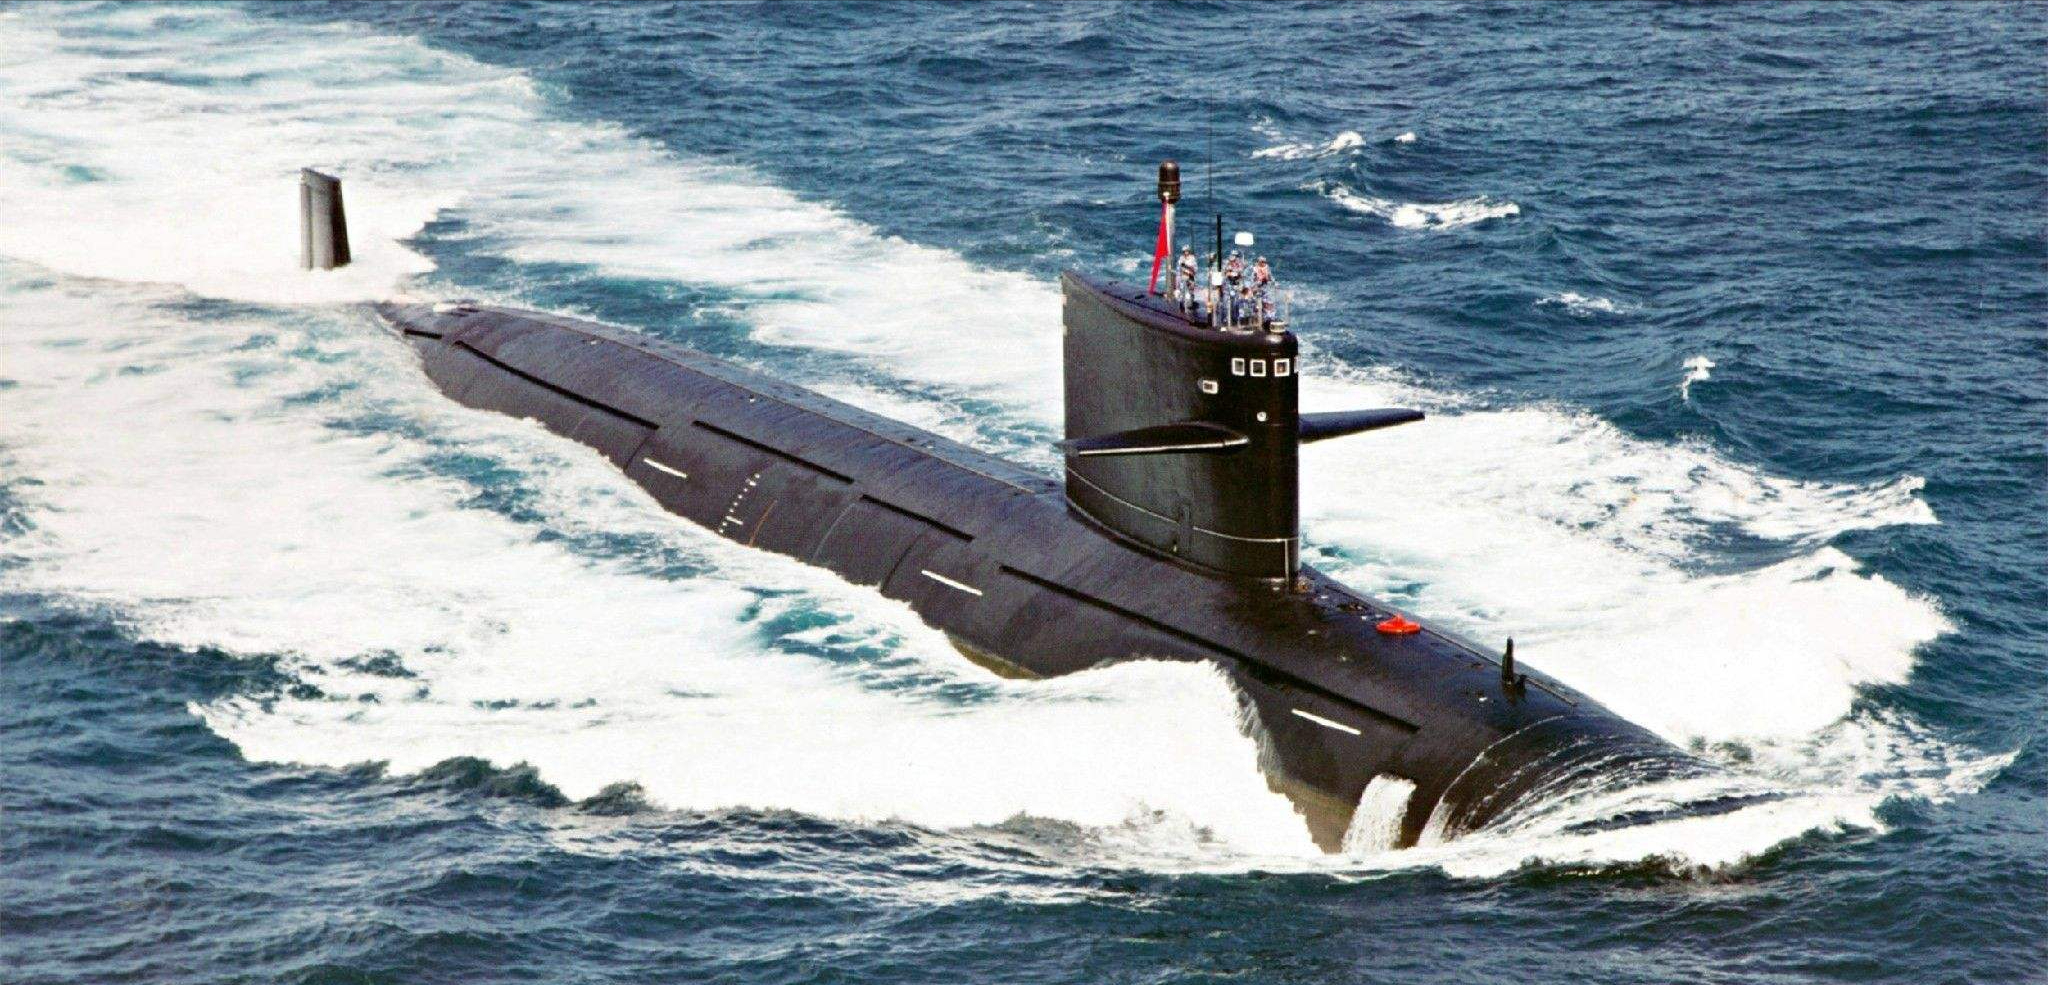 中美俄三国核潜艇对比:美能下潜610米,俄1250米,中国如何?